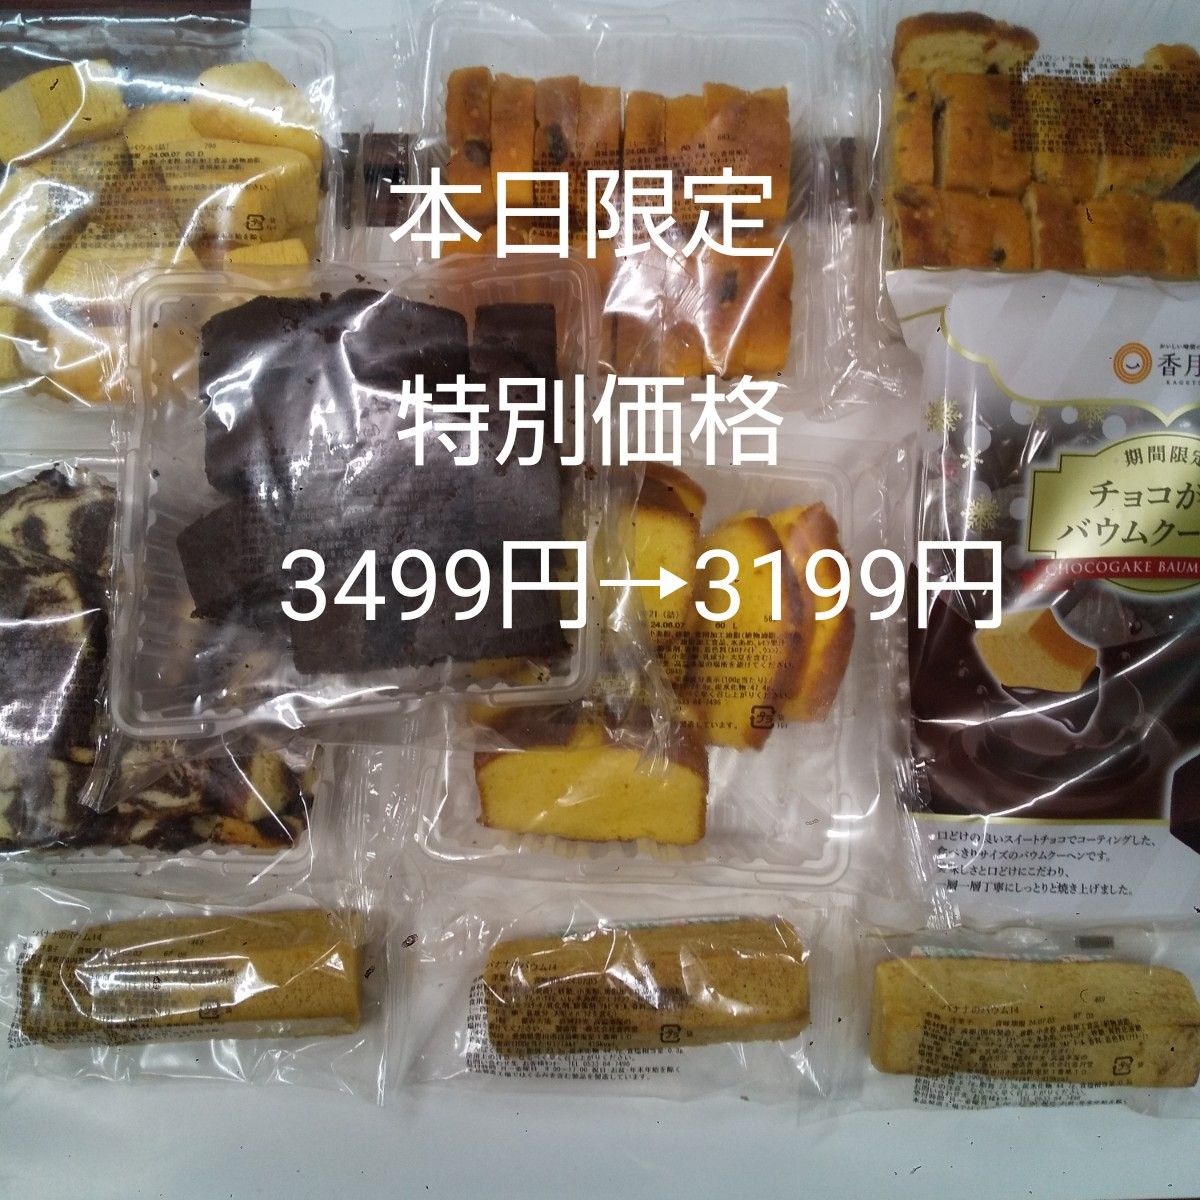 香月堂☆お徳用大袋6袋&チョコがけバウムクーヘン1袋&バナナのバウム3個セット 